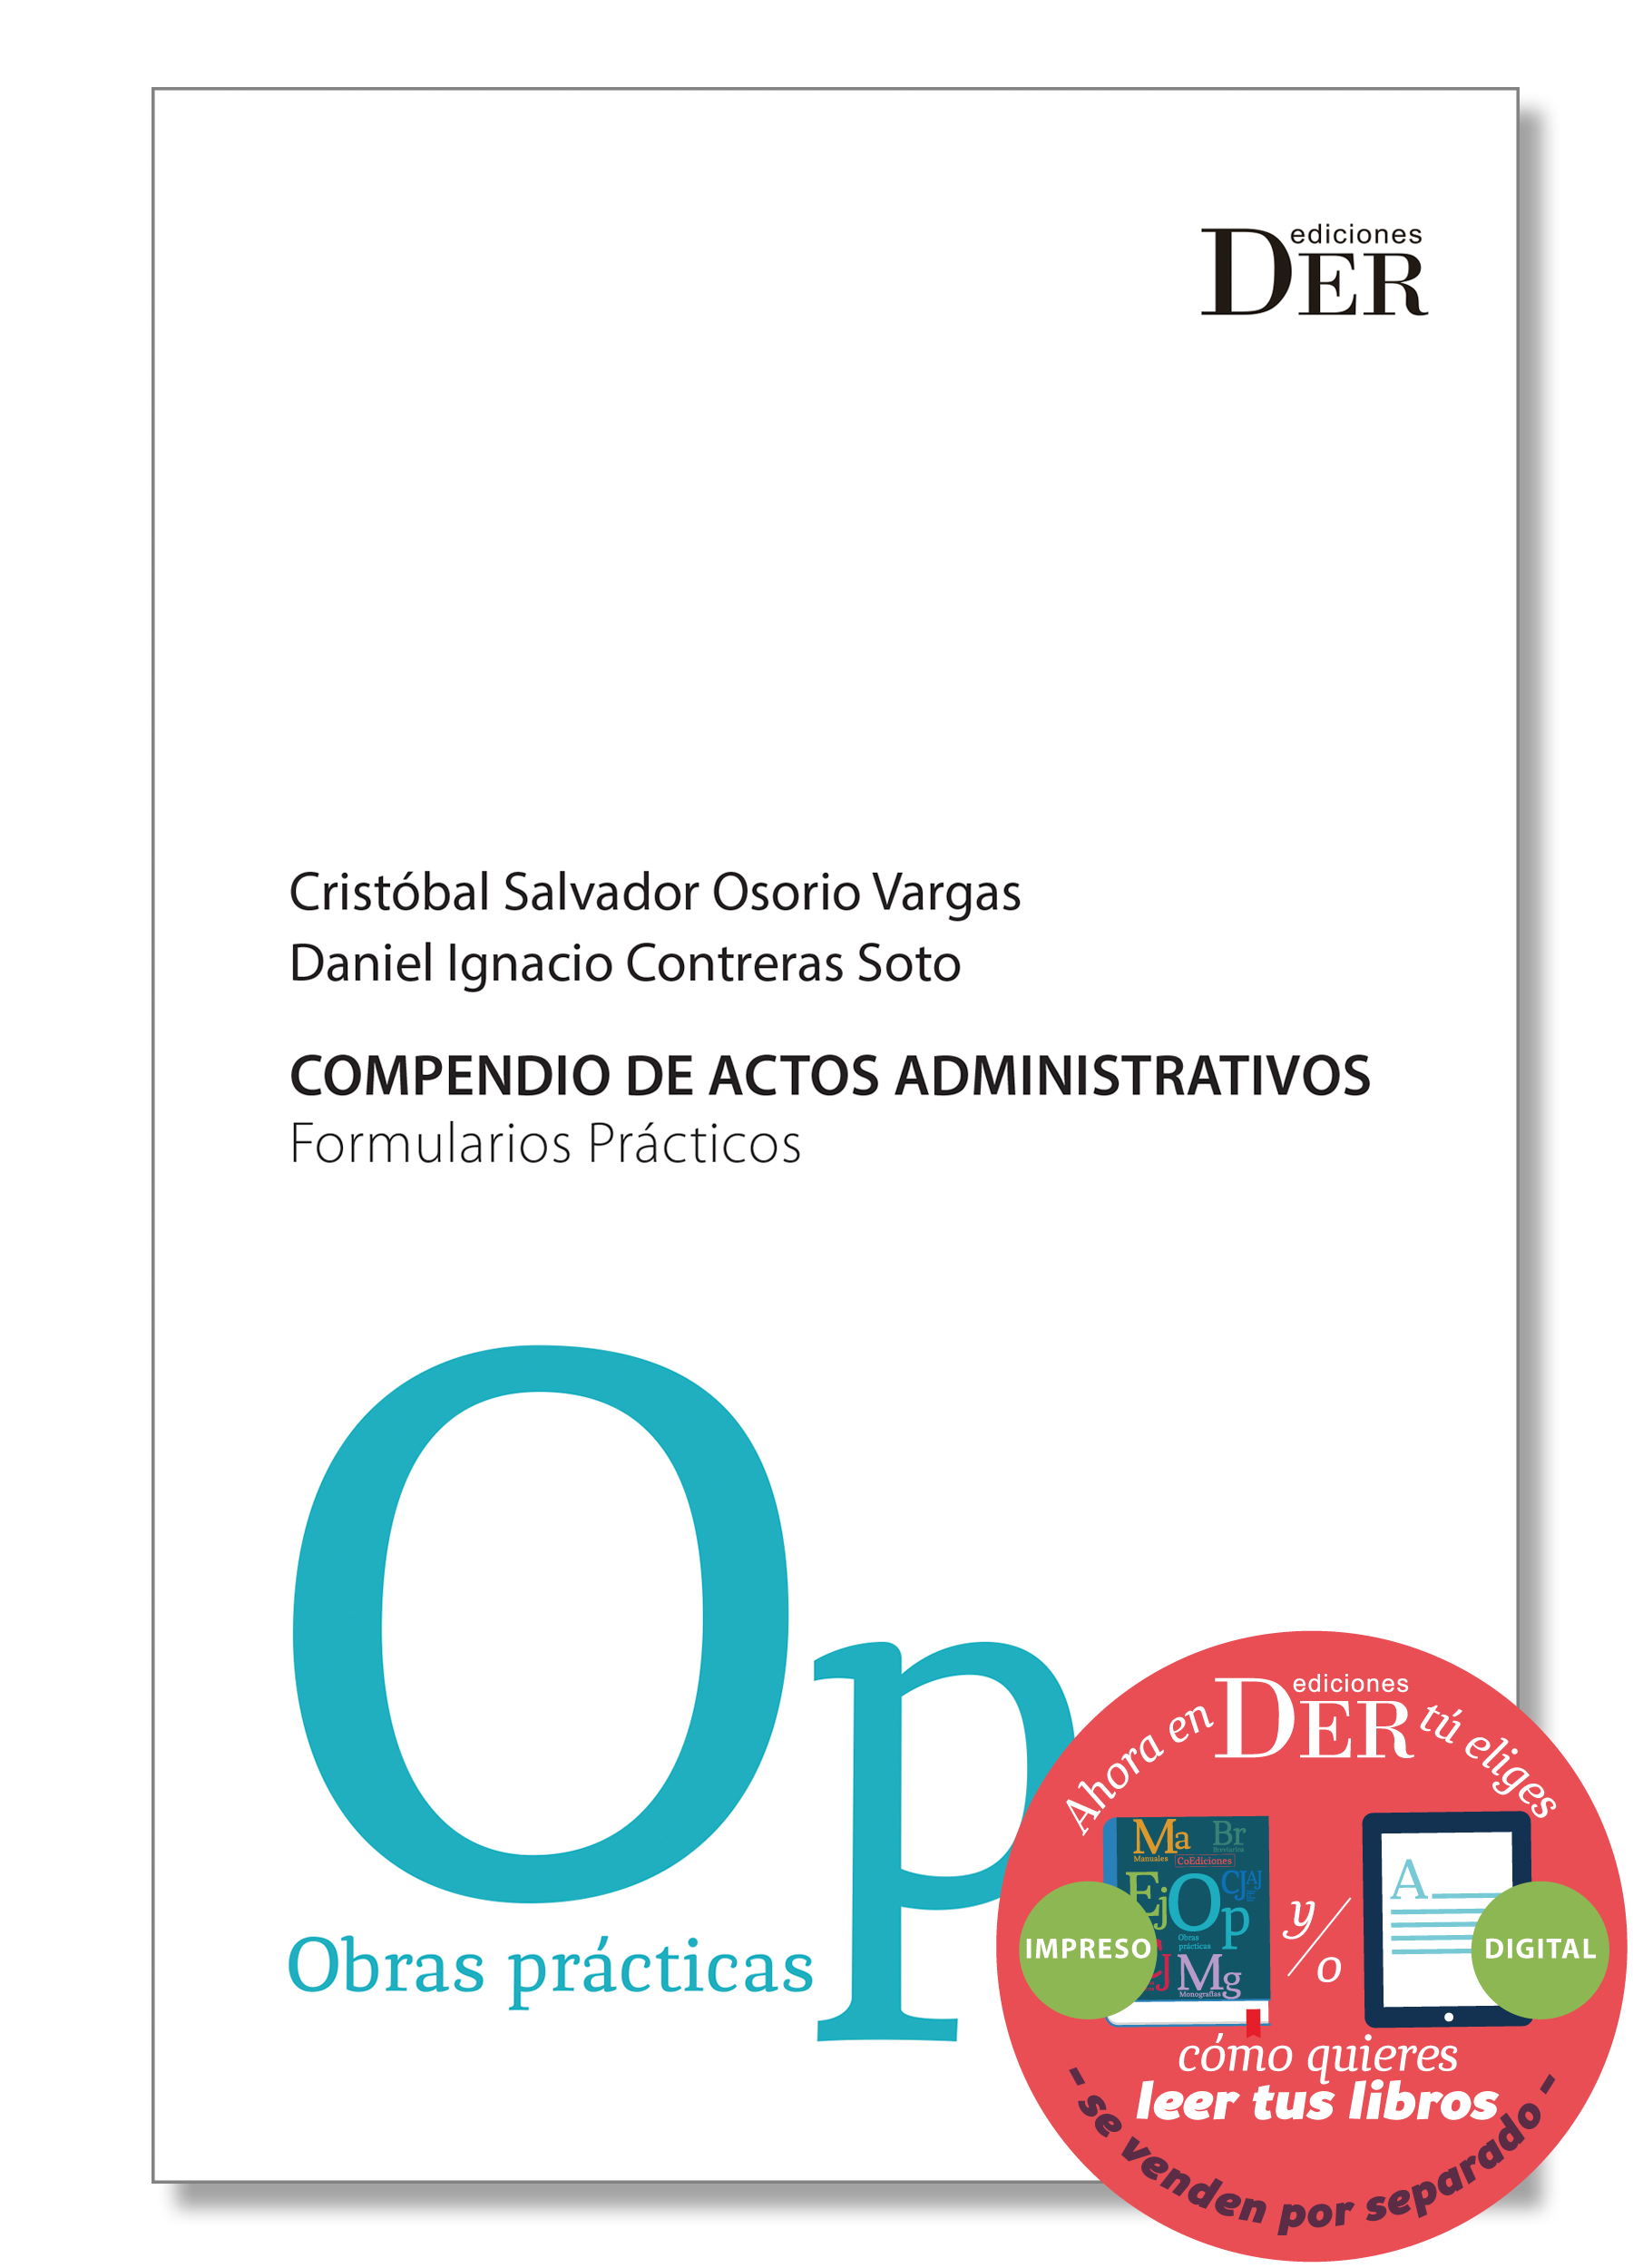 DER Ediciones - Editorial Jurídica - Libros jurídicos - Libros de derecho